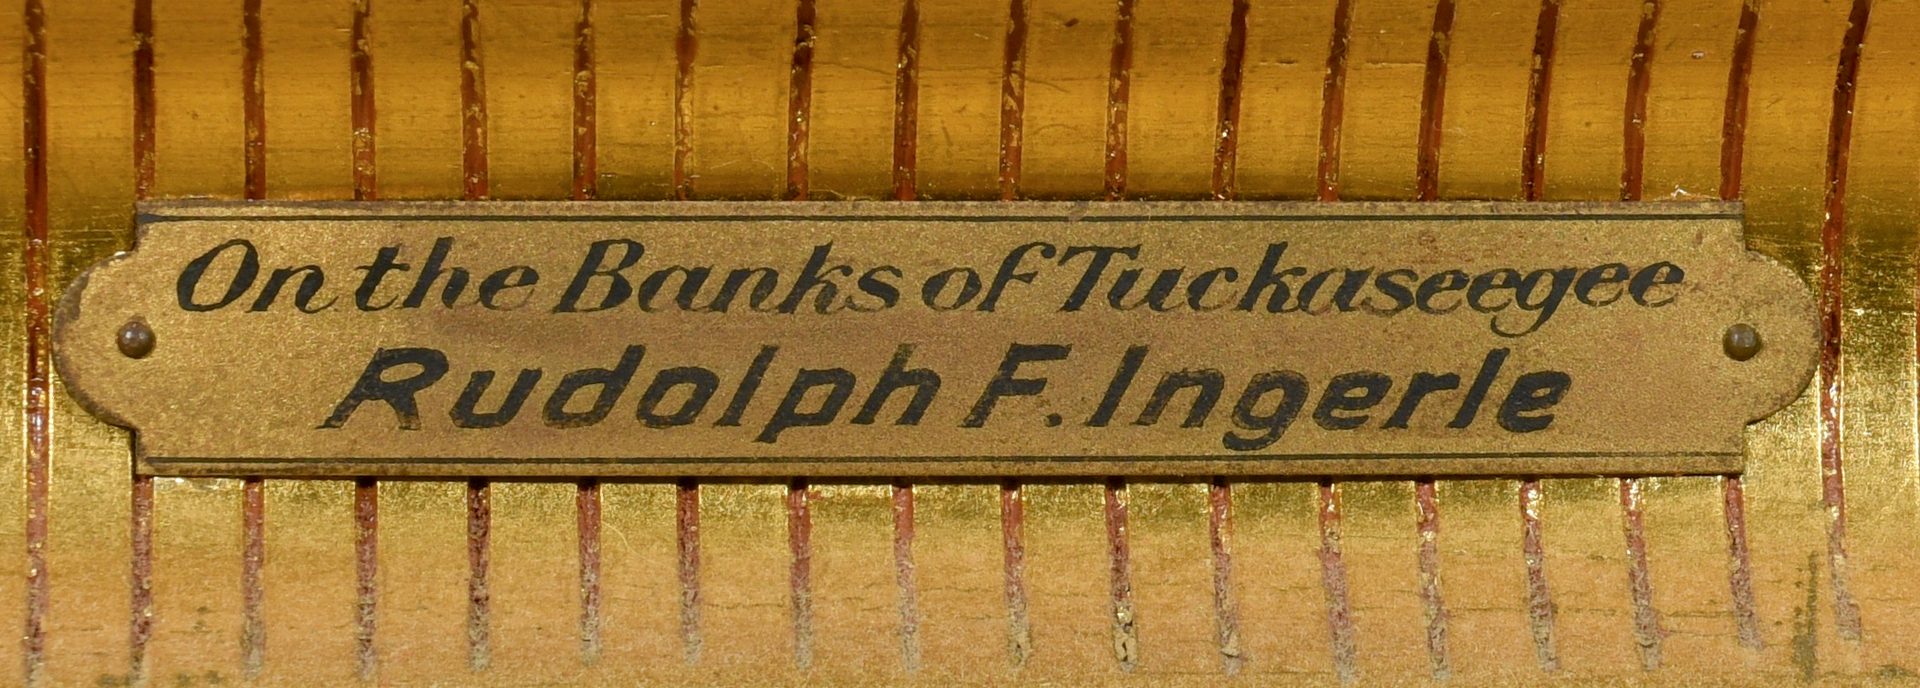 Lot 197: Rudolph Ingerle O/C, Banks of Tuckasegee